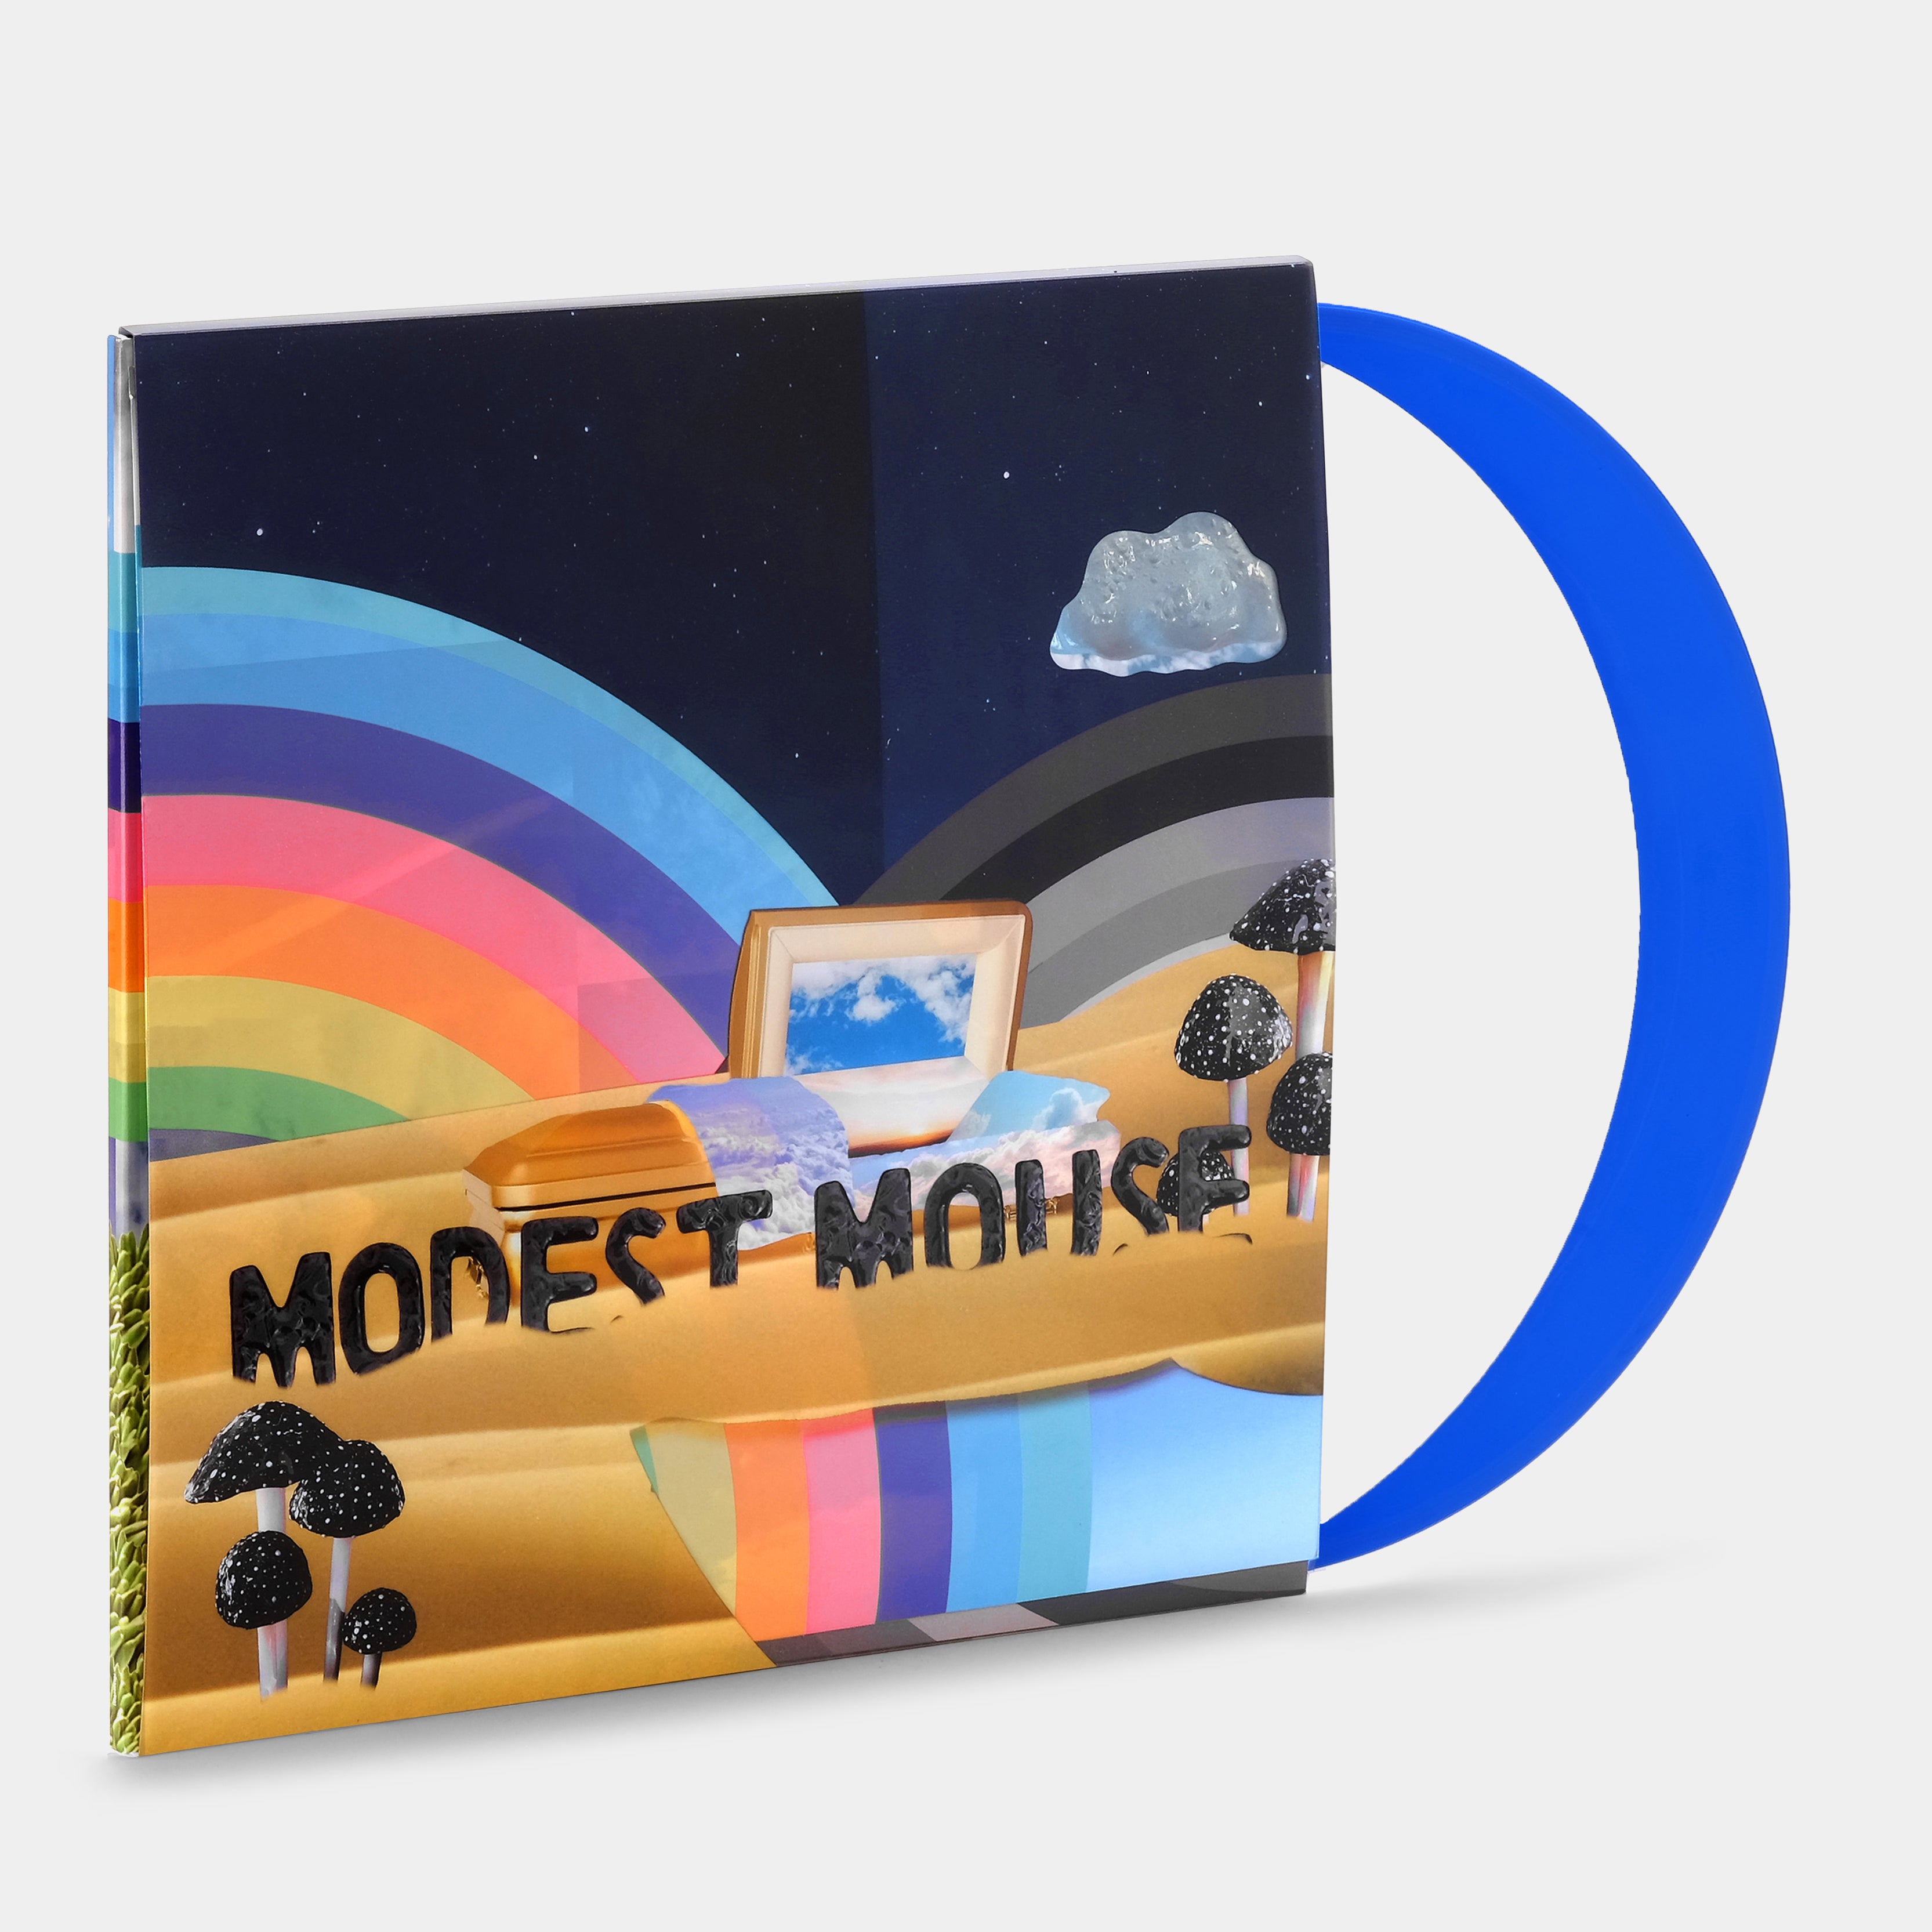 Modest Mouse - The Golden Casket 2xLP White & Blue Vinyl Record